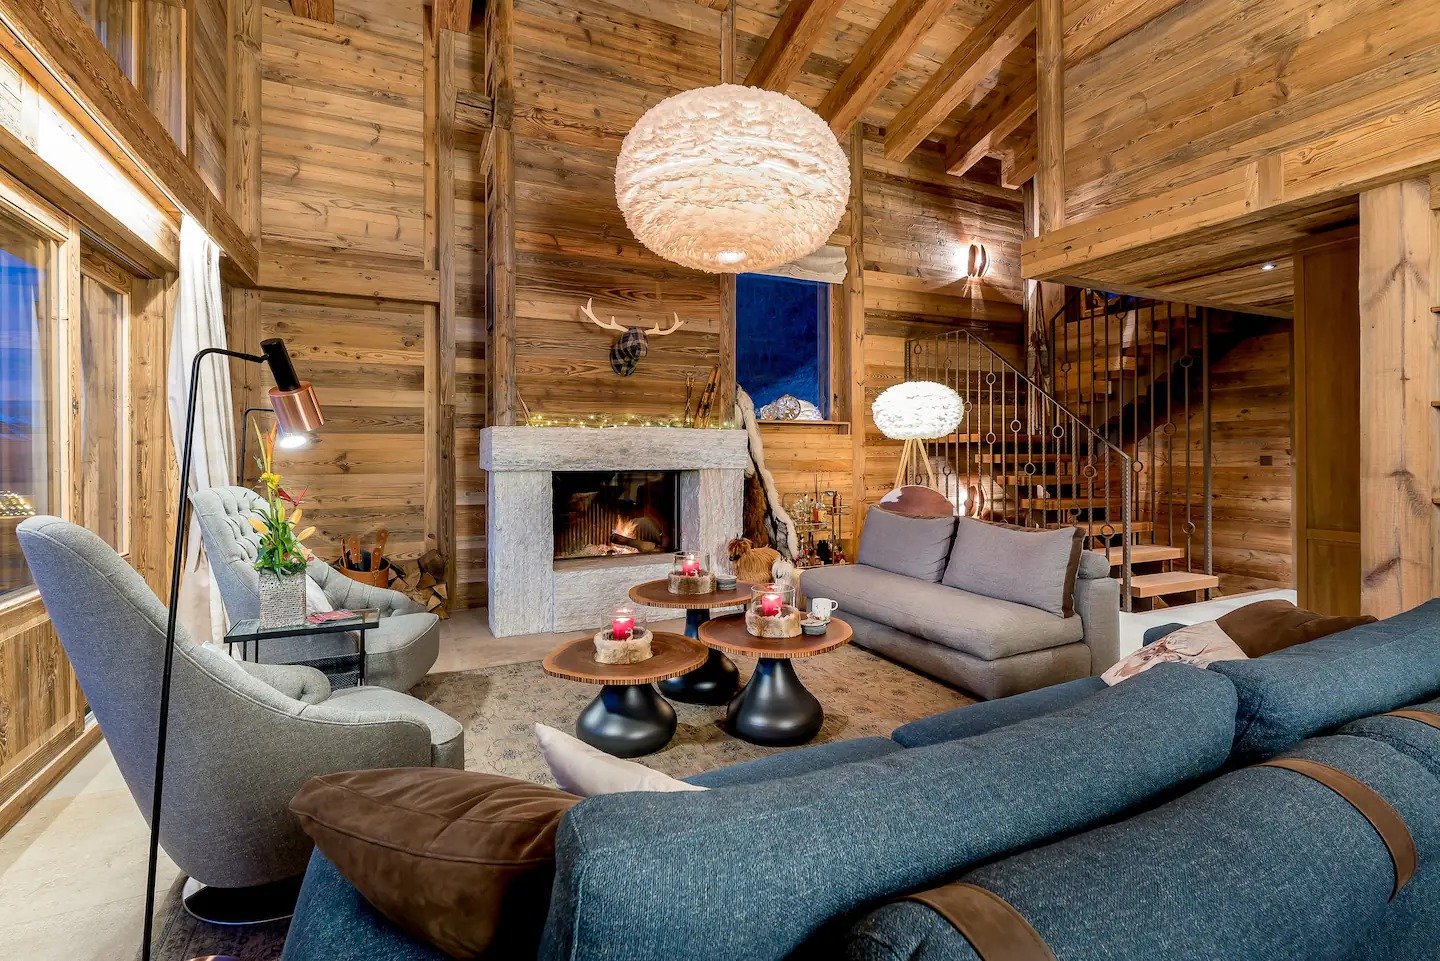 I migliori affitti Airbnb in Svizzera